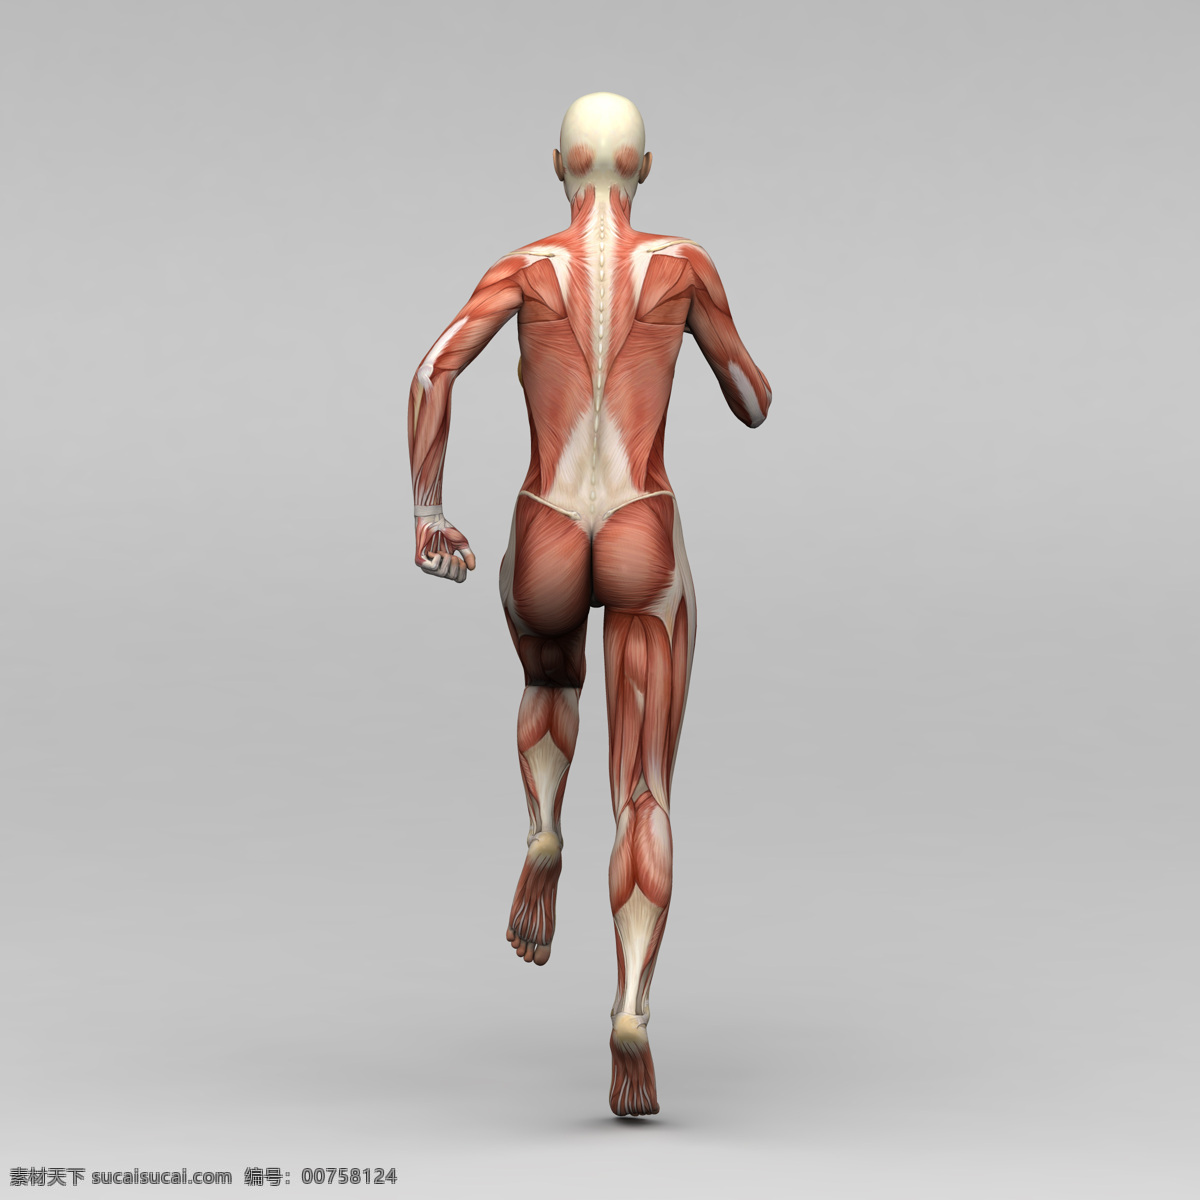 运动 女 背部 肌肉 组织 女性 人体 素描画 人体肌肉器官 肌肉结构 人体解剖学 其他人物 人物图库 医疗护理 现代科技